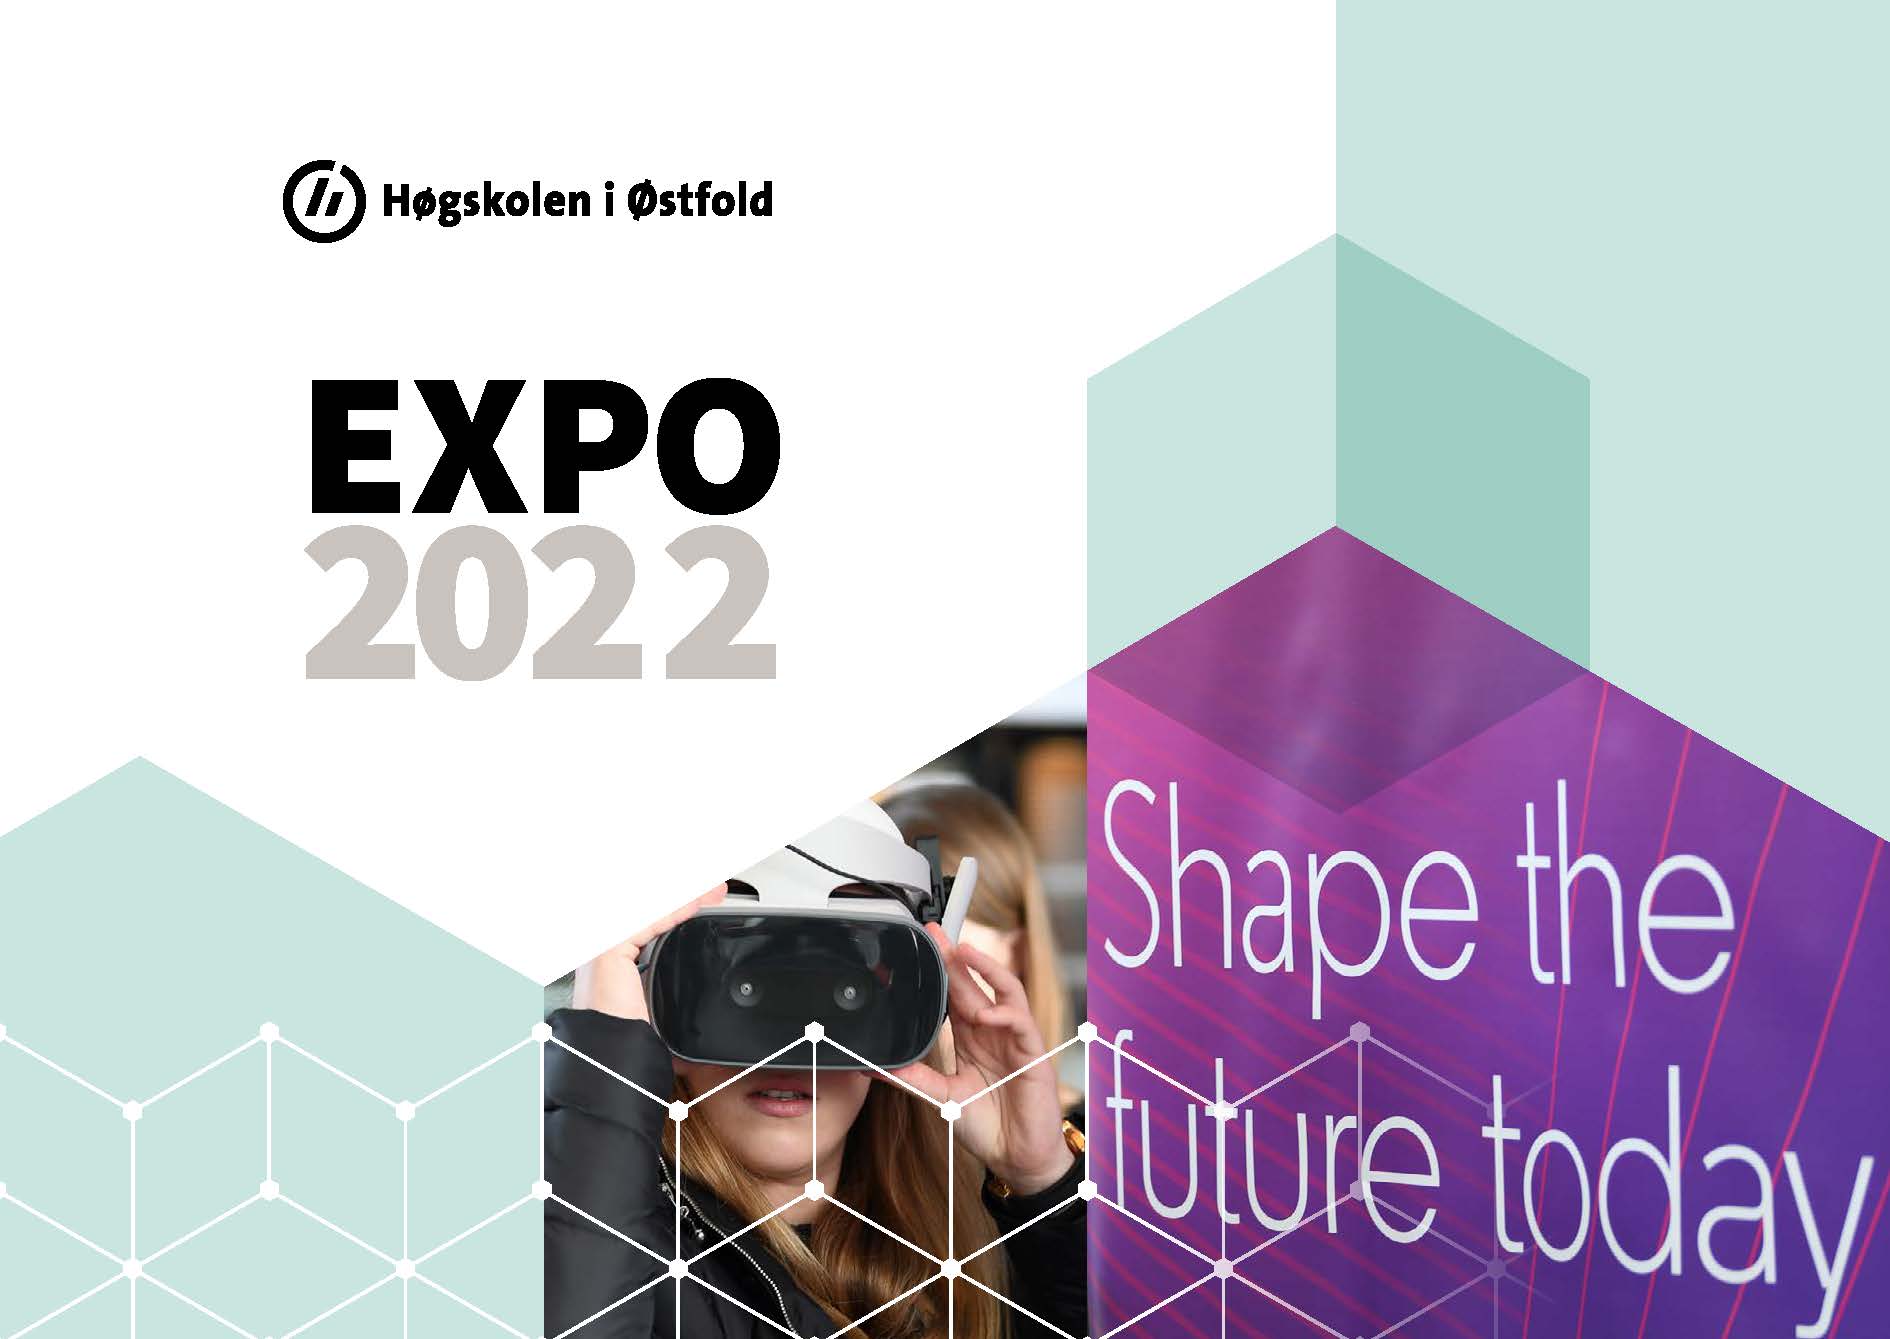 Forsiden av EXPO-katalogen 2022 med teksten Shape the future today.